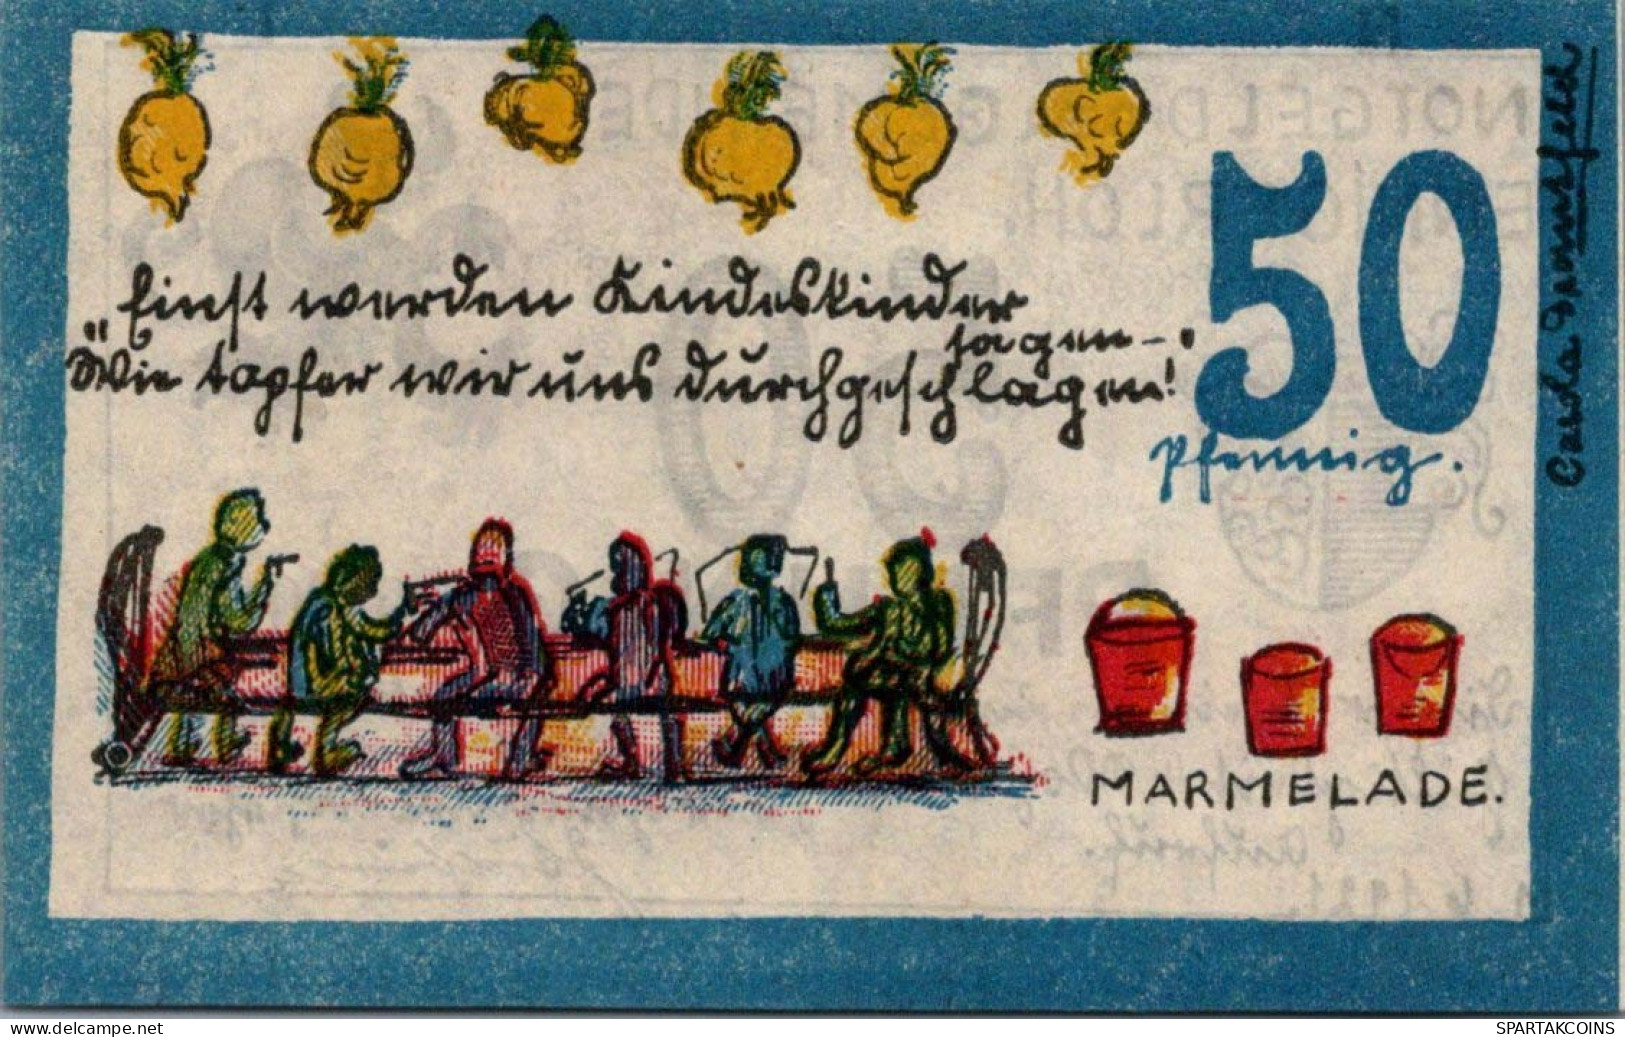 50 PFENNIG 1921 Stadt ENNIGERLOH Westphalia UNC DEUTSCHLAND Notgeld #PB244 - [11] Local Banknote Issues